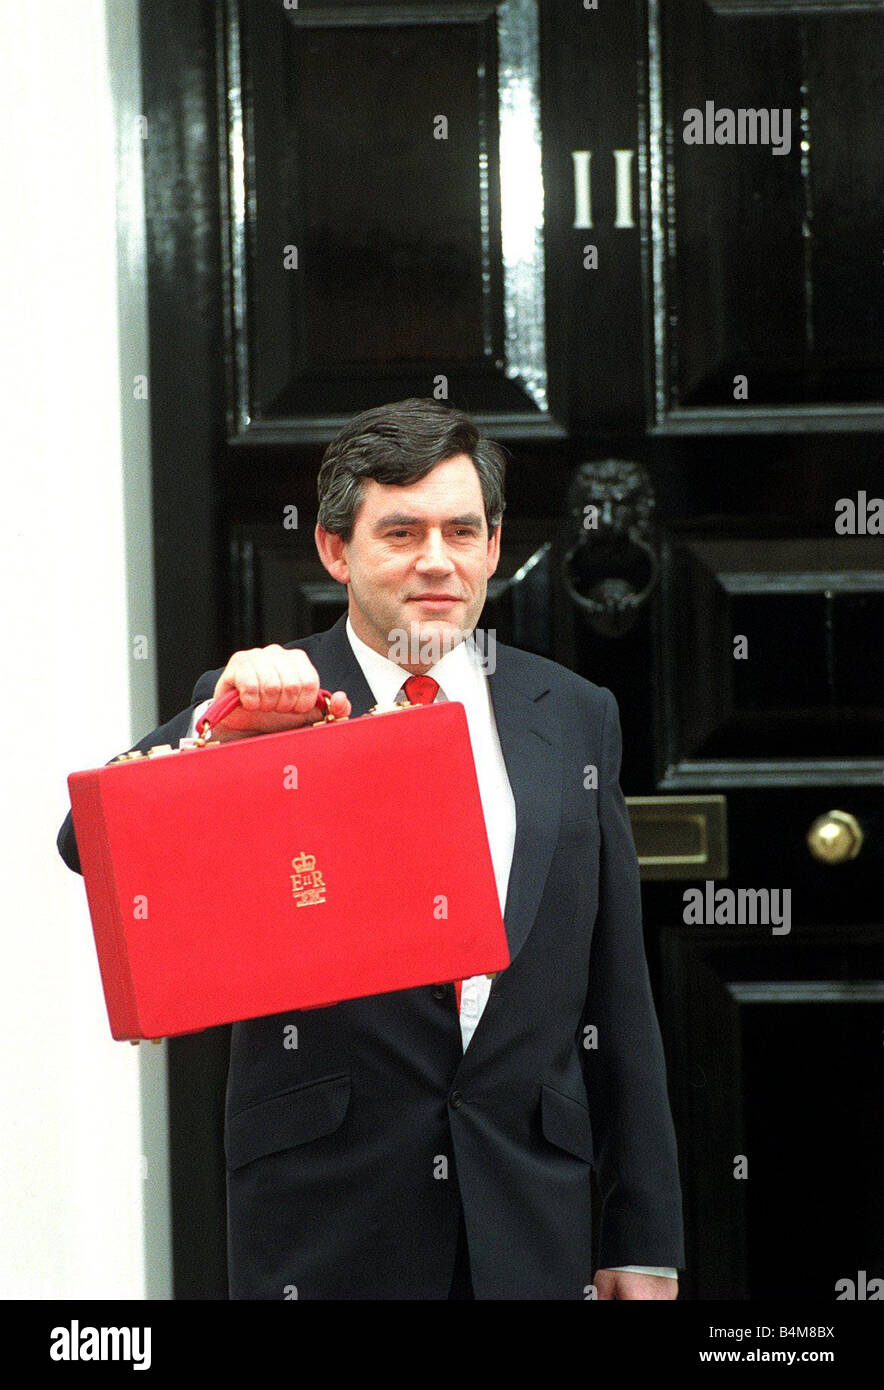 Gordon Brown sobre presupuesto día de marzo de 1998 plantea como abandona su residencia oficial, el 11 de Downing Street con el Cuadro presupuestario tradicional en la ruta a Westminster en su discurso ante la Cámara de los Comunes, Brown espera anunciar un presupuesto para ayudar a las personas con bajos ingresos Foto de stock